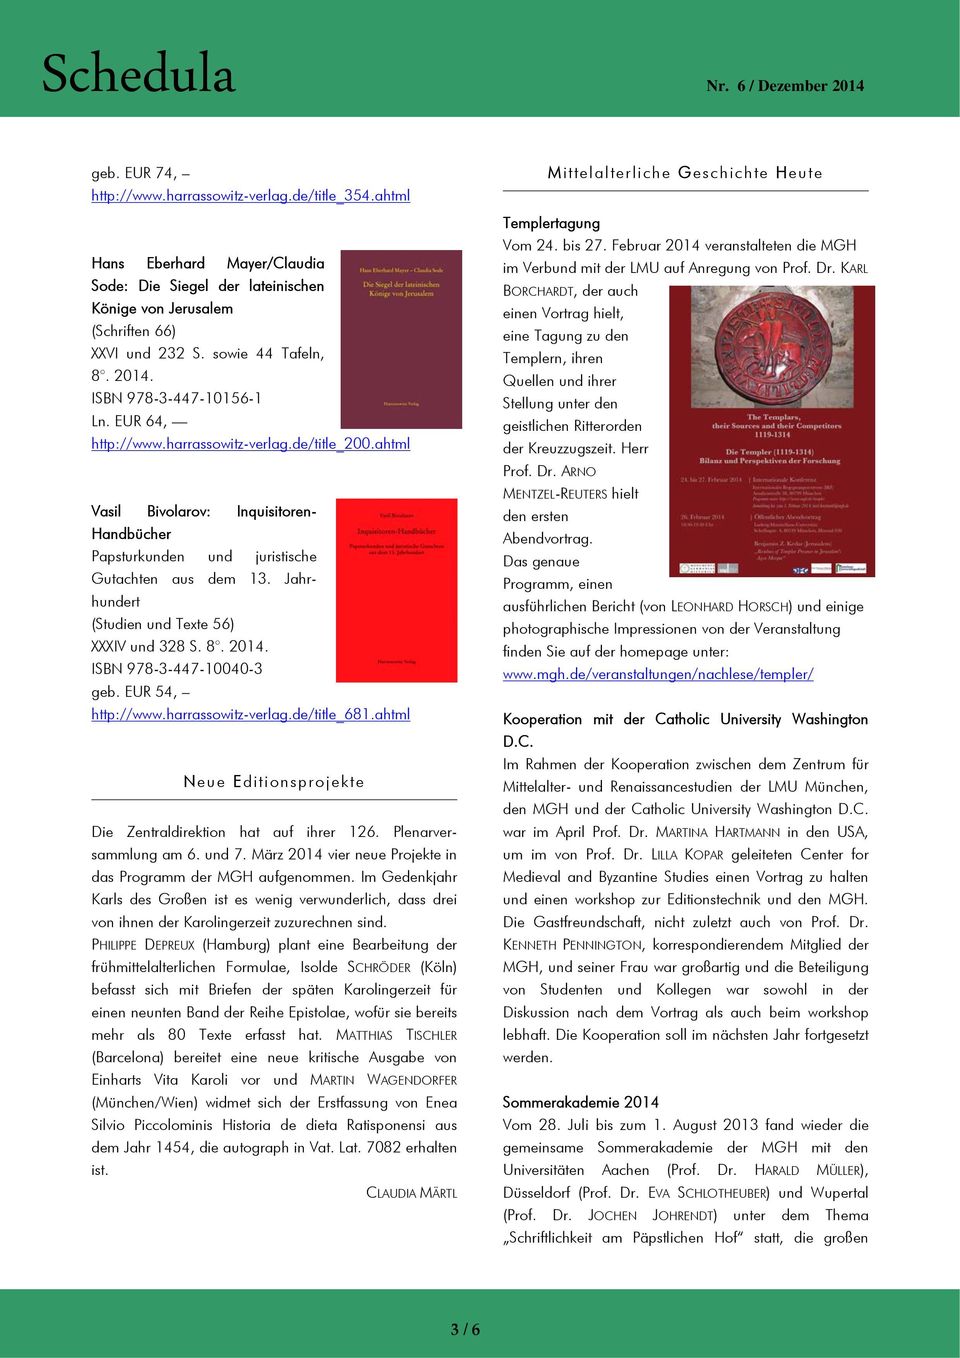 Jahrhundert (Studien und Texte 56) XXXIV und 328 S. 8. 2014. ISBN 978-3-447-10040-3 geb. EUR 54, http://www.harrassowitz-verlag.de/title_681.